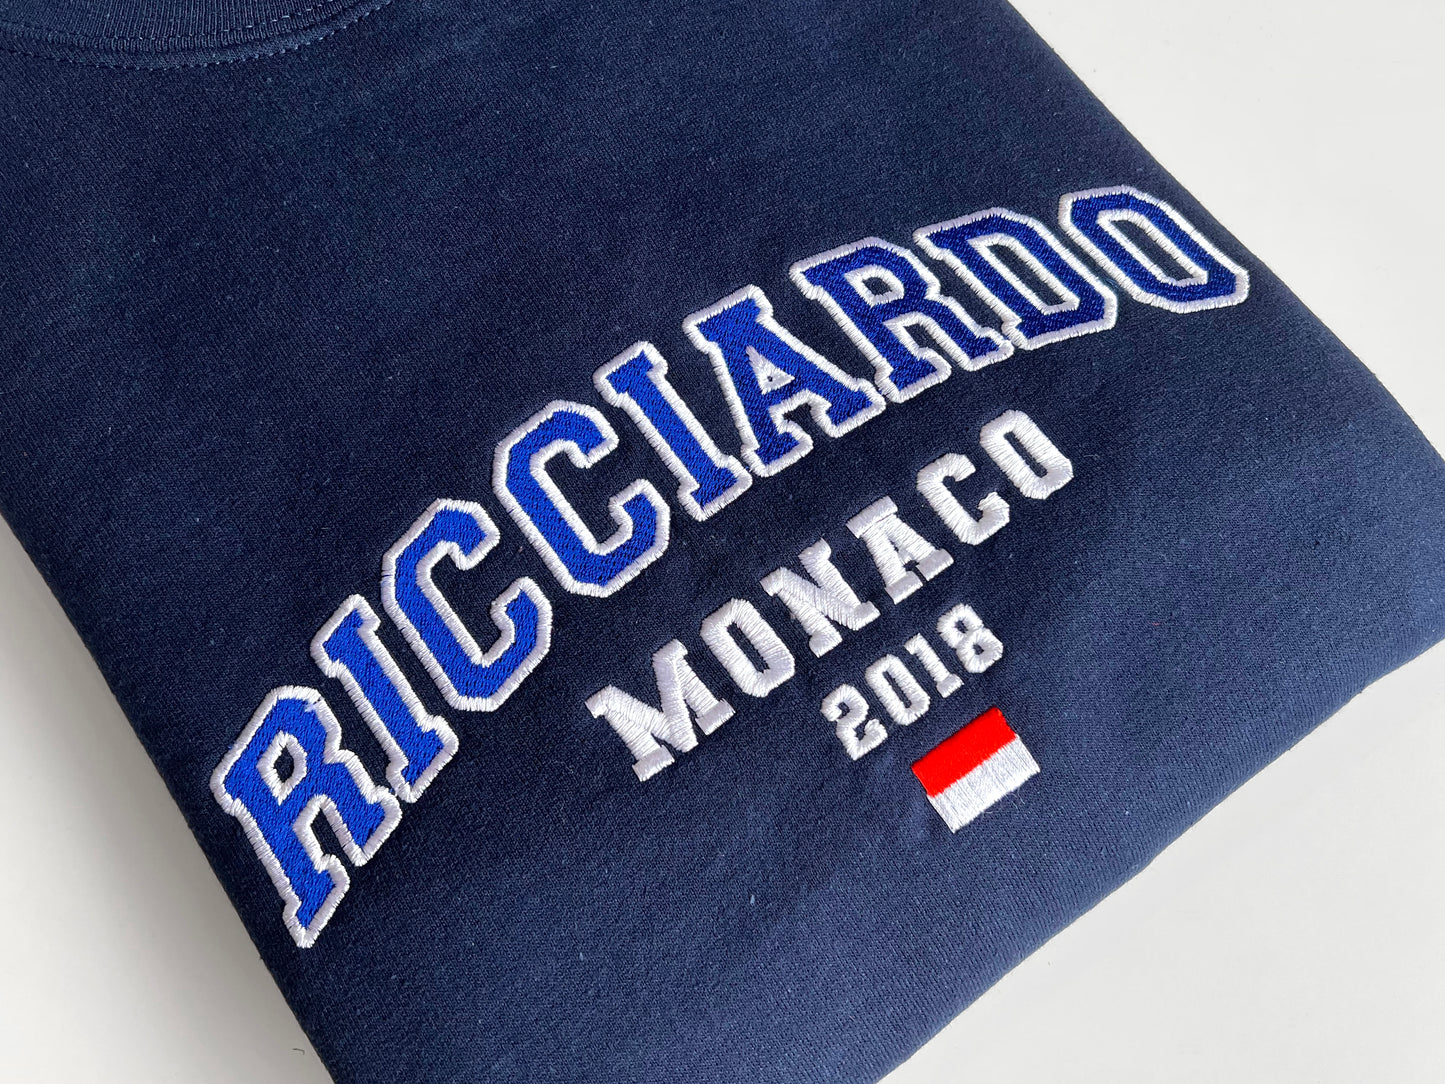 Daniel Ricciardo - MONACO 2018 | Varsity Sweatshirt